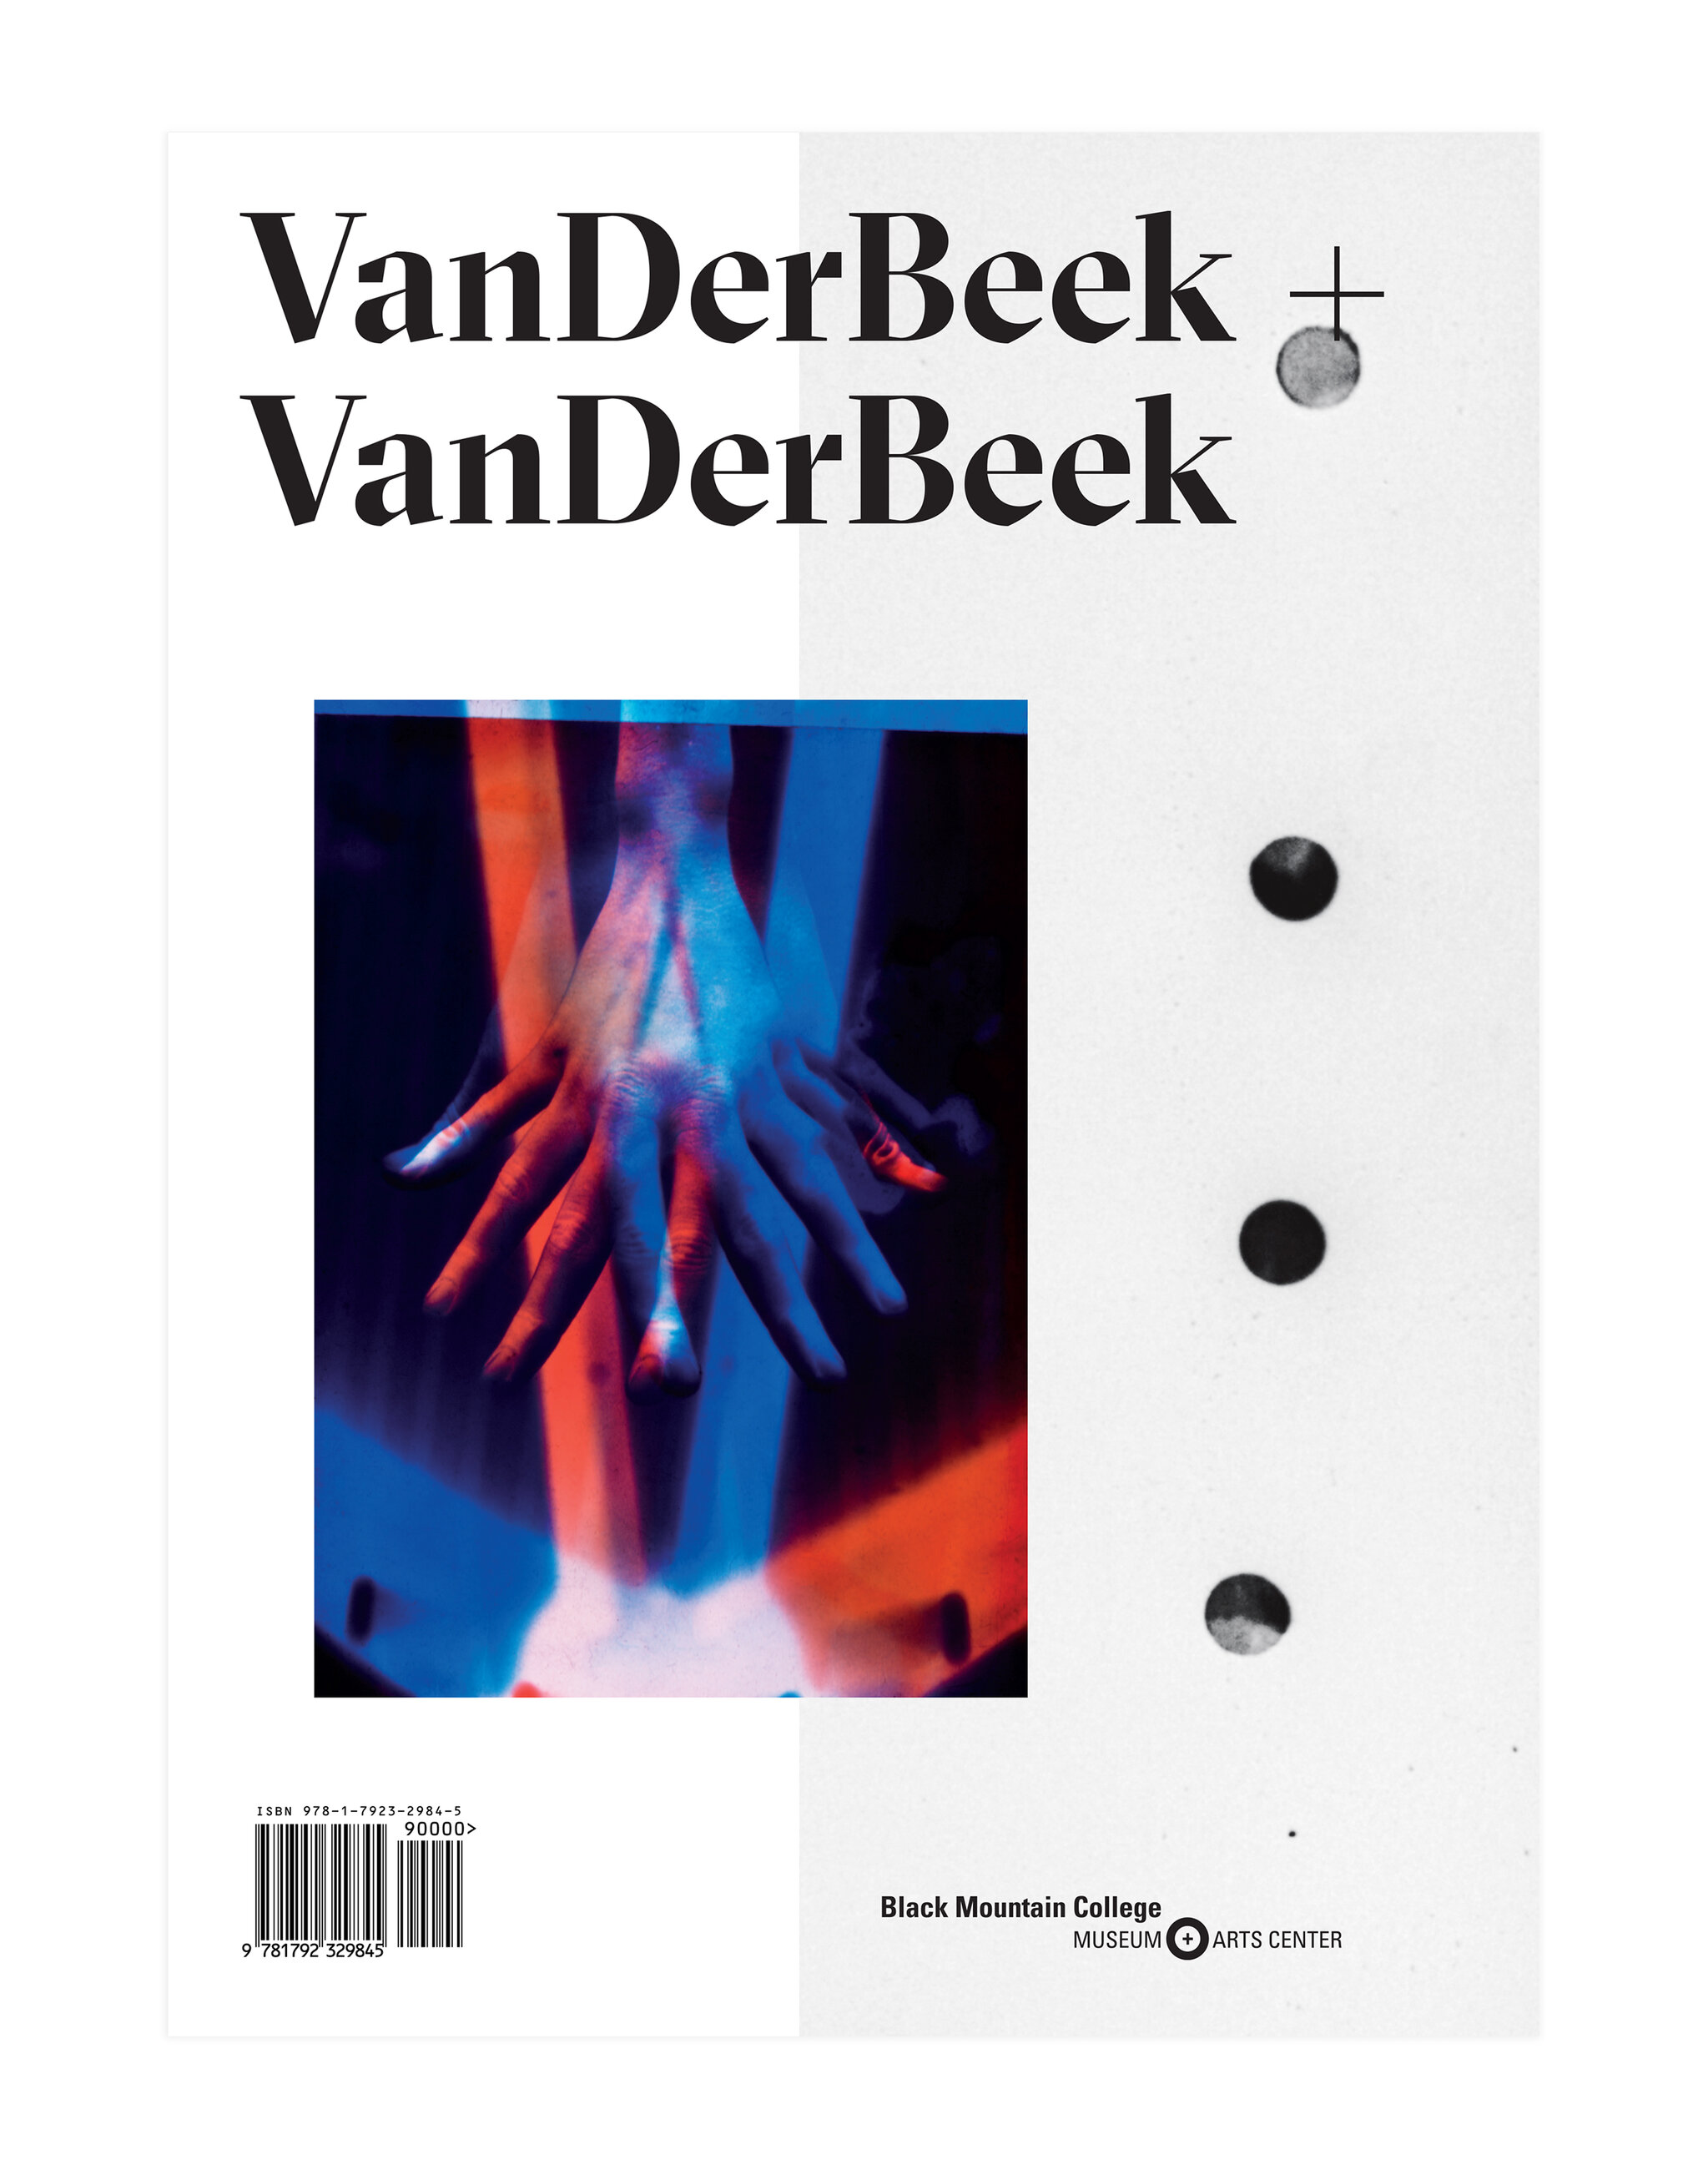 VanDerBeek + VanDerBeek, Edited by Sara VanDerBeek and Chelsea Spengemann with a foreword by Jeff Arnal, Published by Black Mountain College Museum + Arts Center, 2020